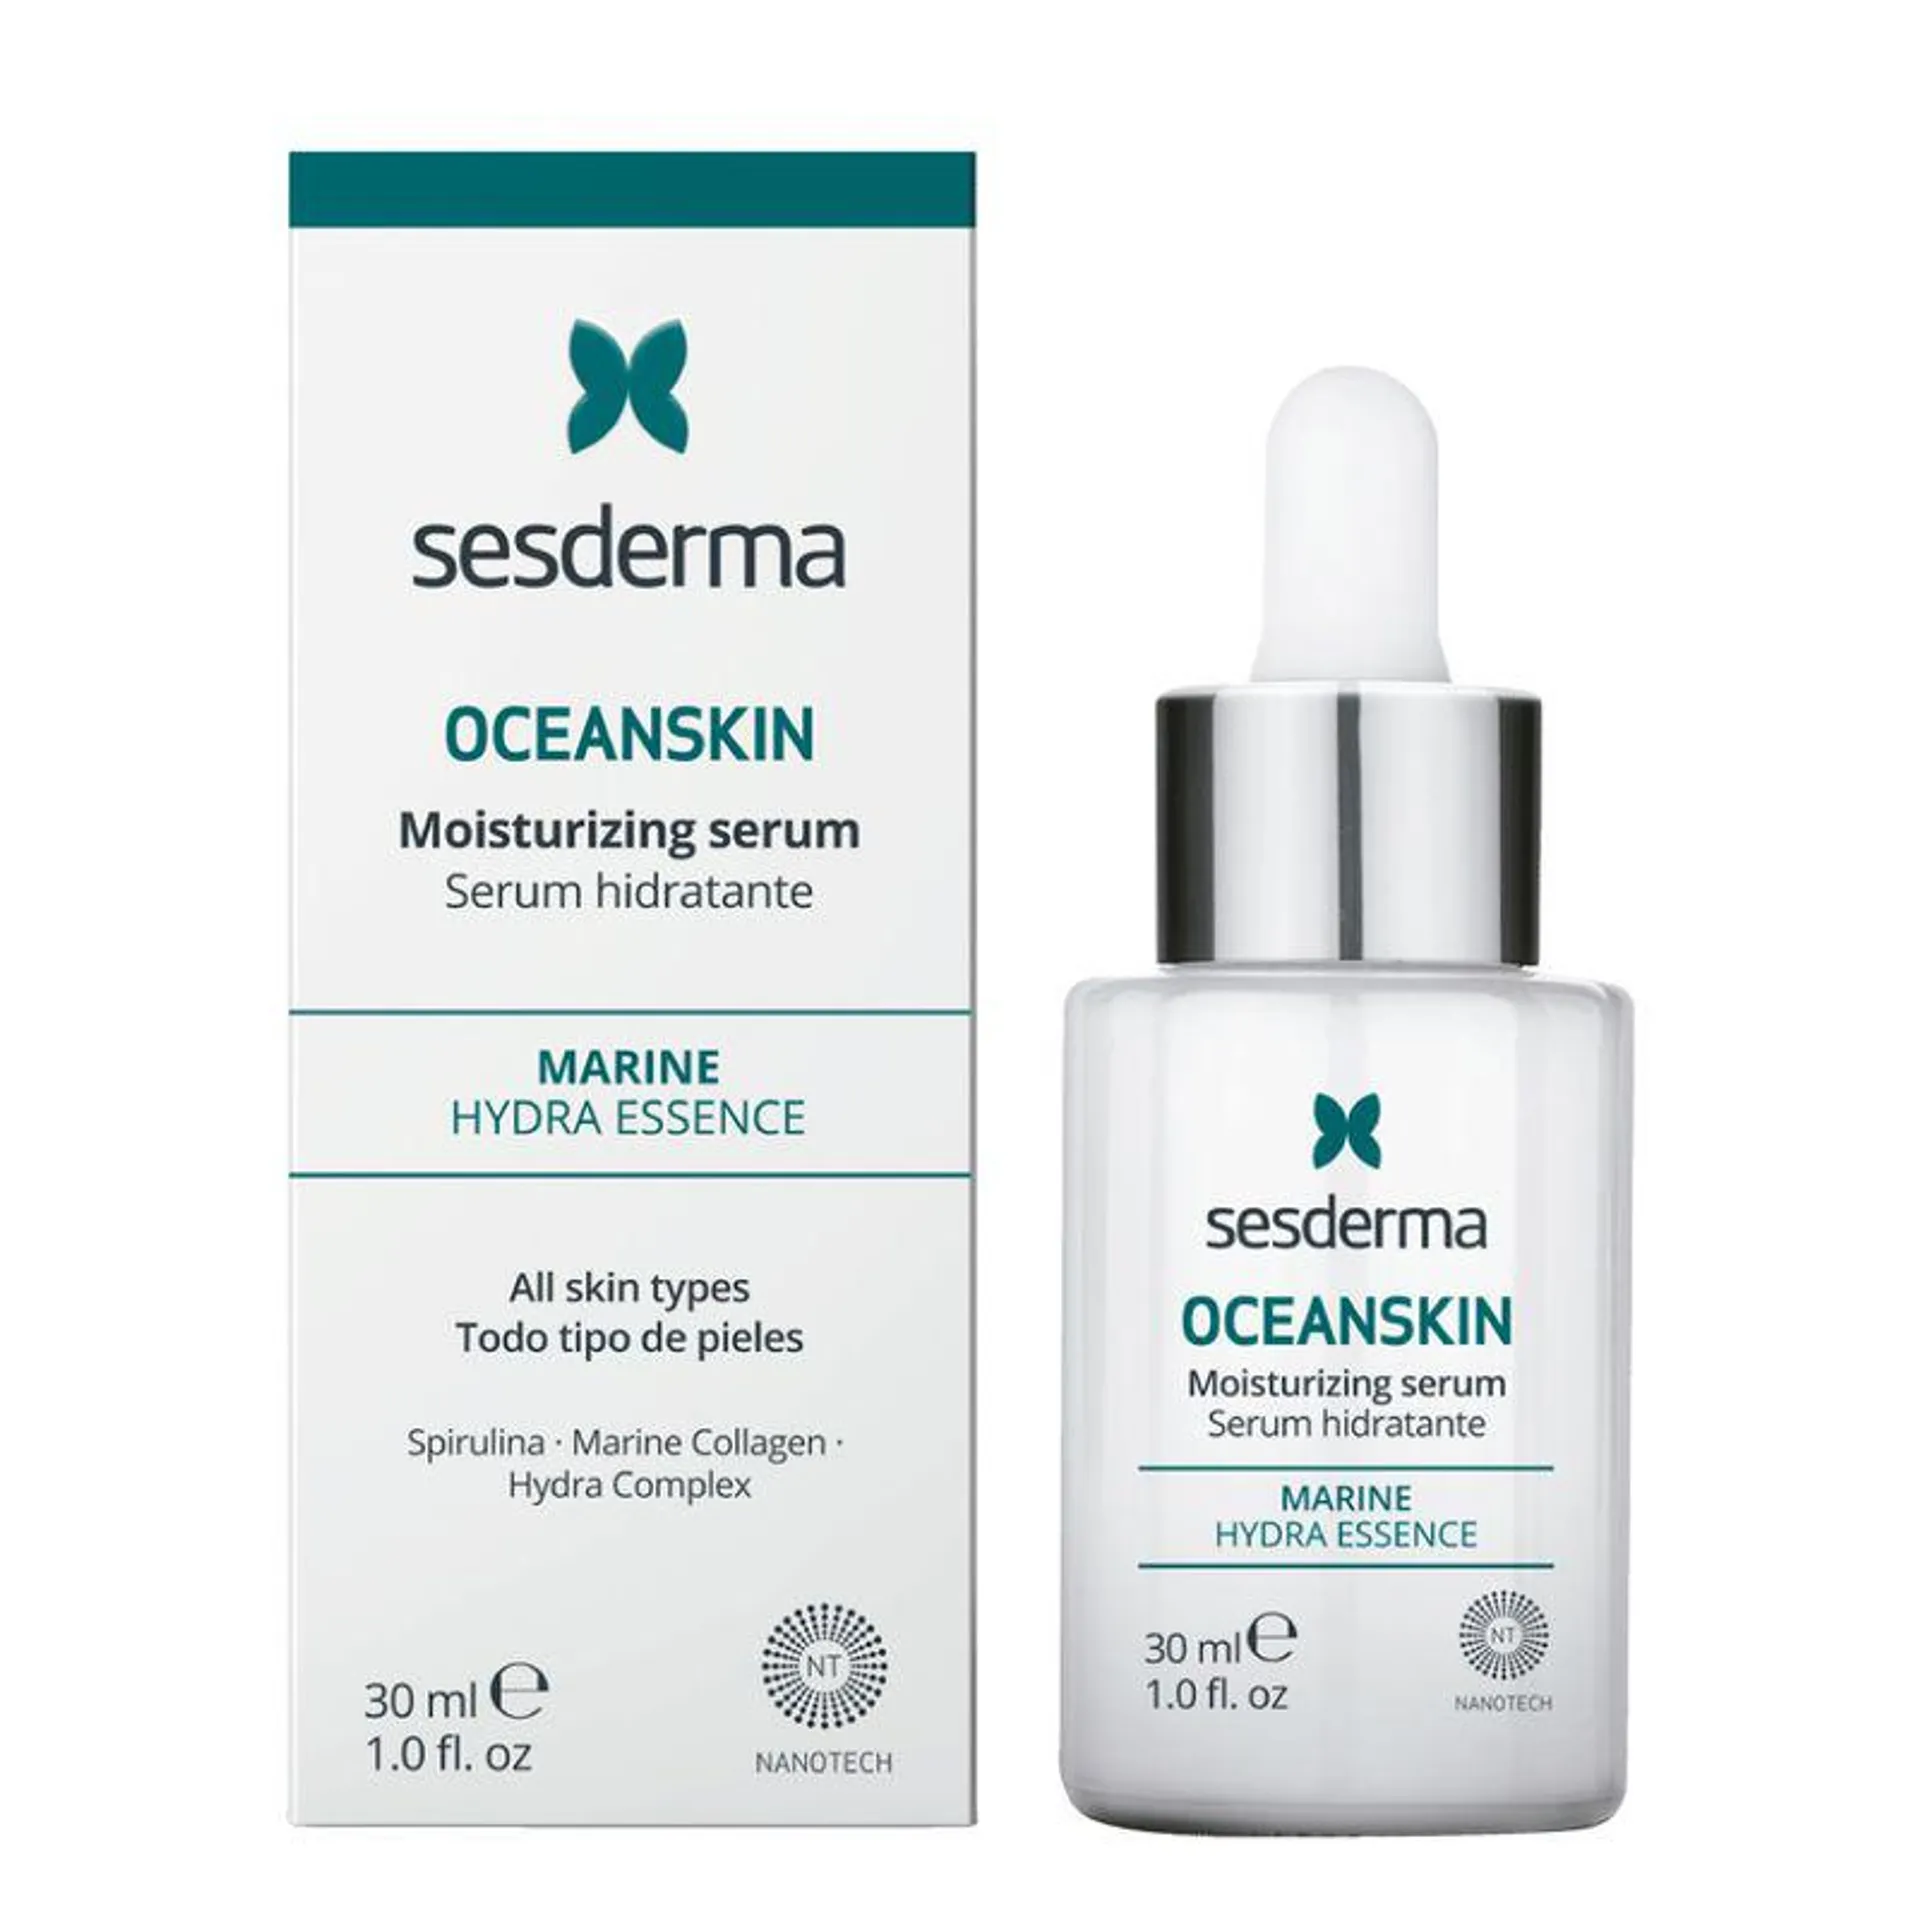 Oceanskin Serum Hidratante - Sesderma